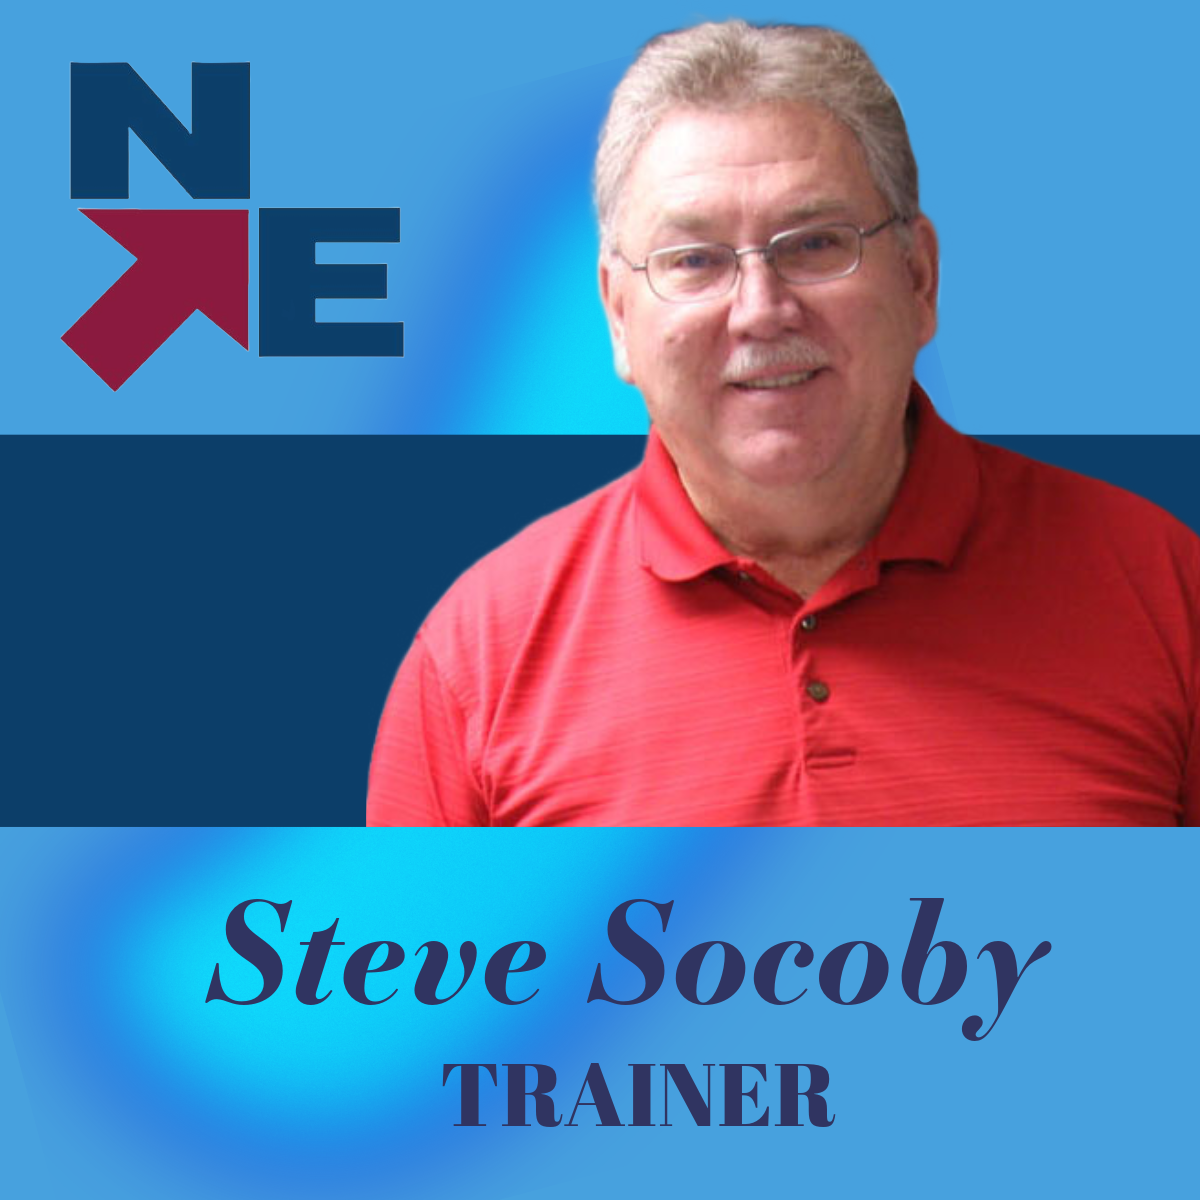 Steve Socoby